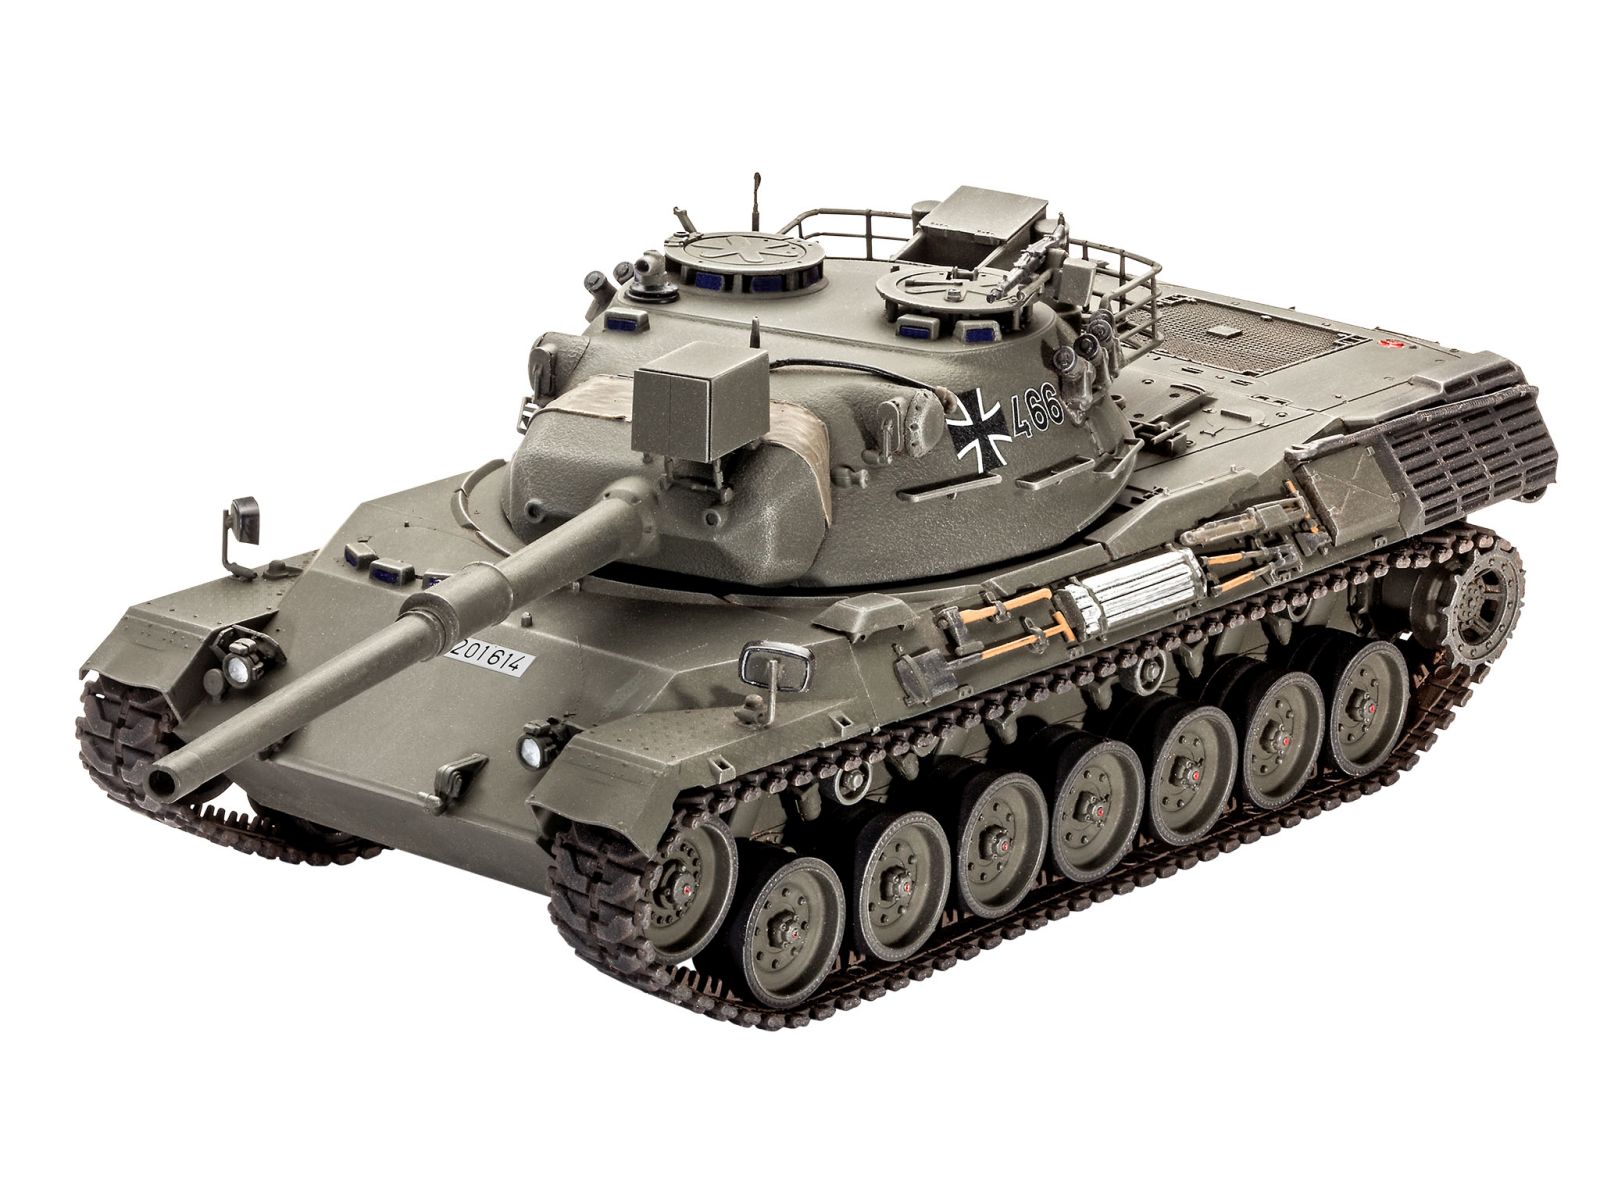 Revell 03240 - Leopard 1